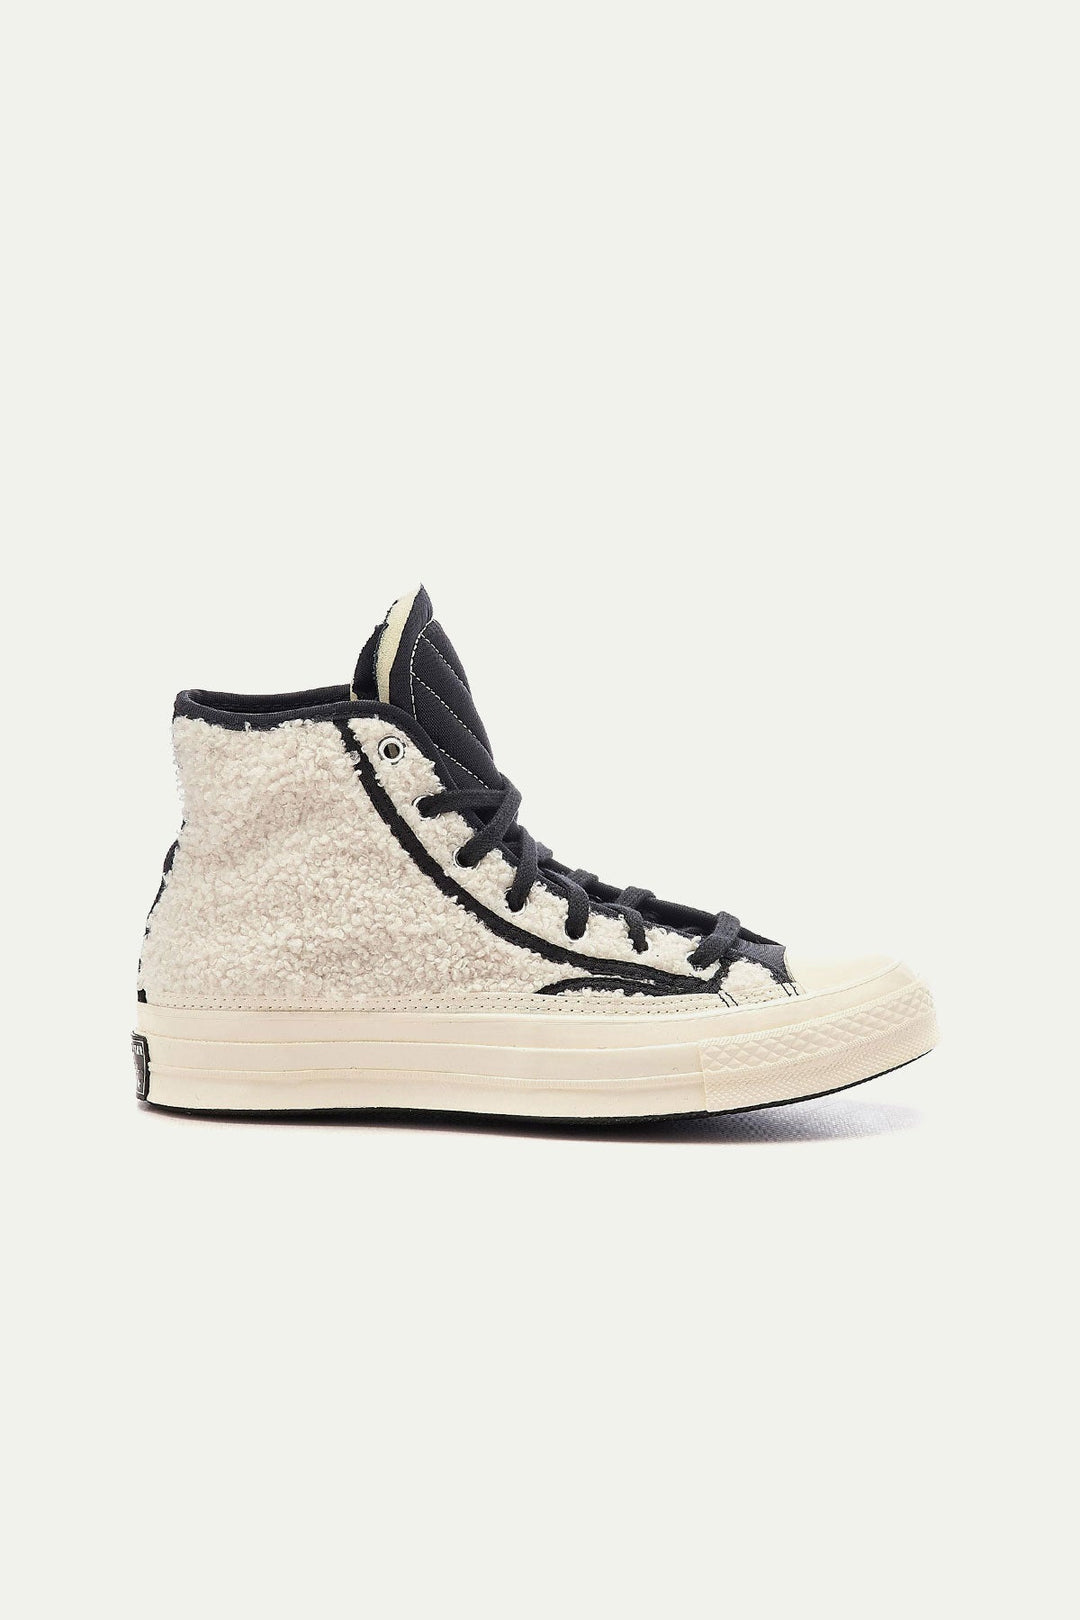 נעלי CHUCK 70 פרוותיות בצבע לבן - Converse